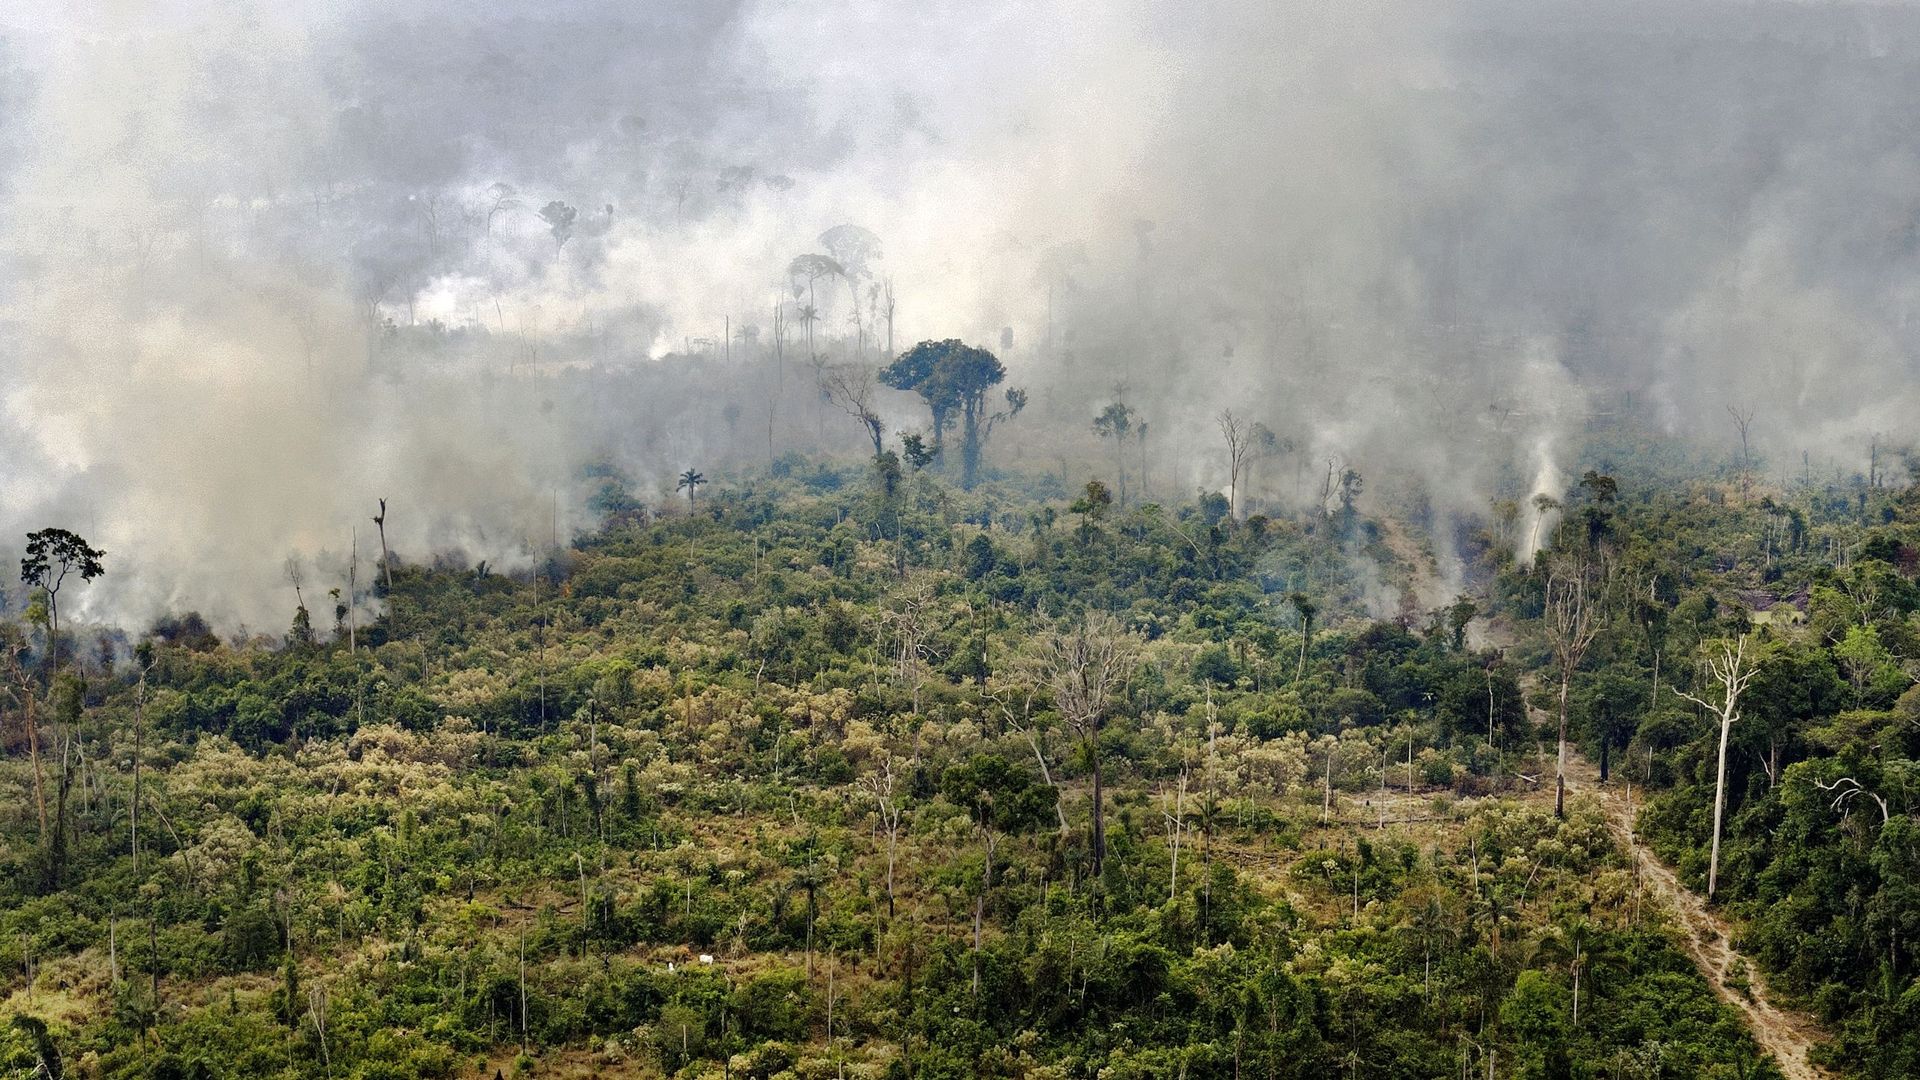 Les forêts tropicales risquent bientôt d'émettre plus de CO2 qu'elles n'en captent, comme cette forêt en feu au Brésil.